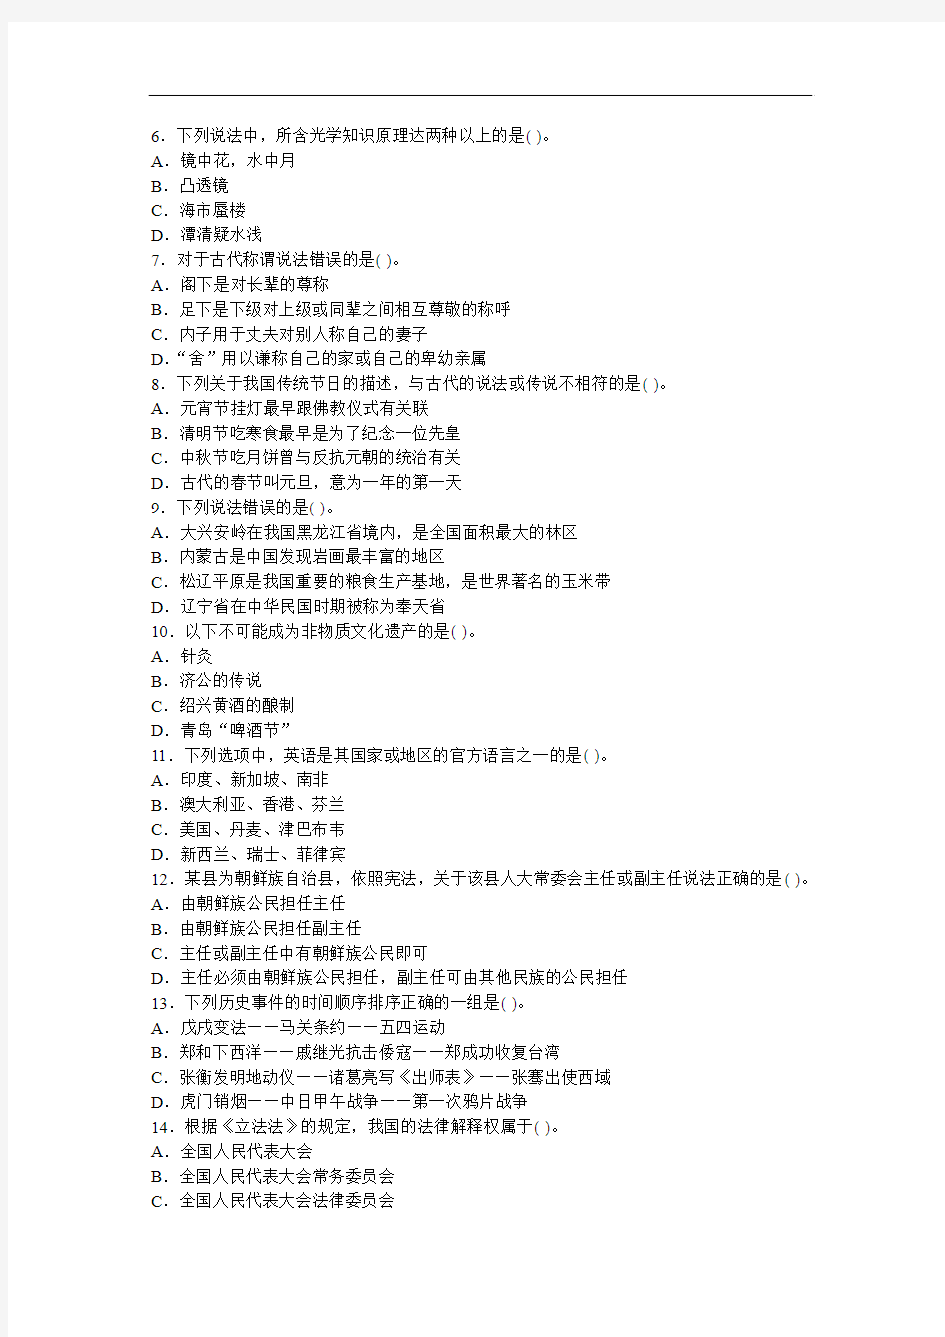 2009年4月26日公务员考试(三省联考)行测真题及答案解析(天津、陕西、湖北)